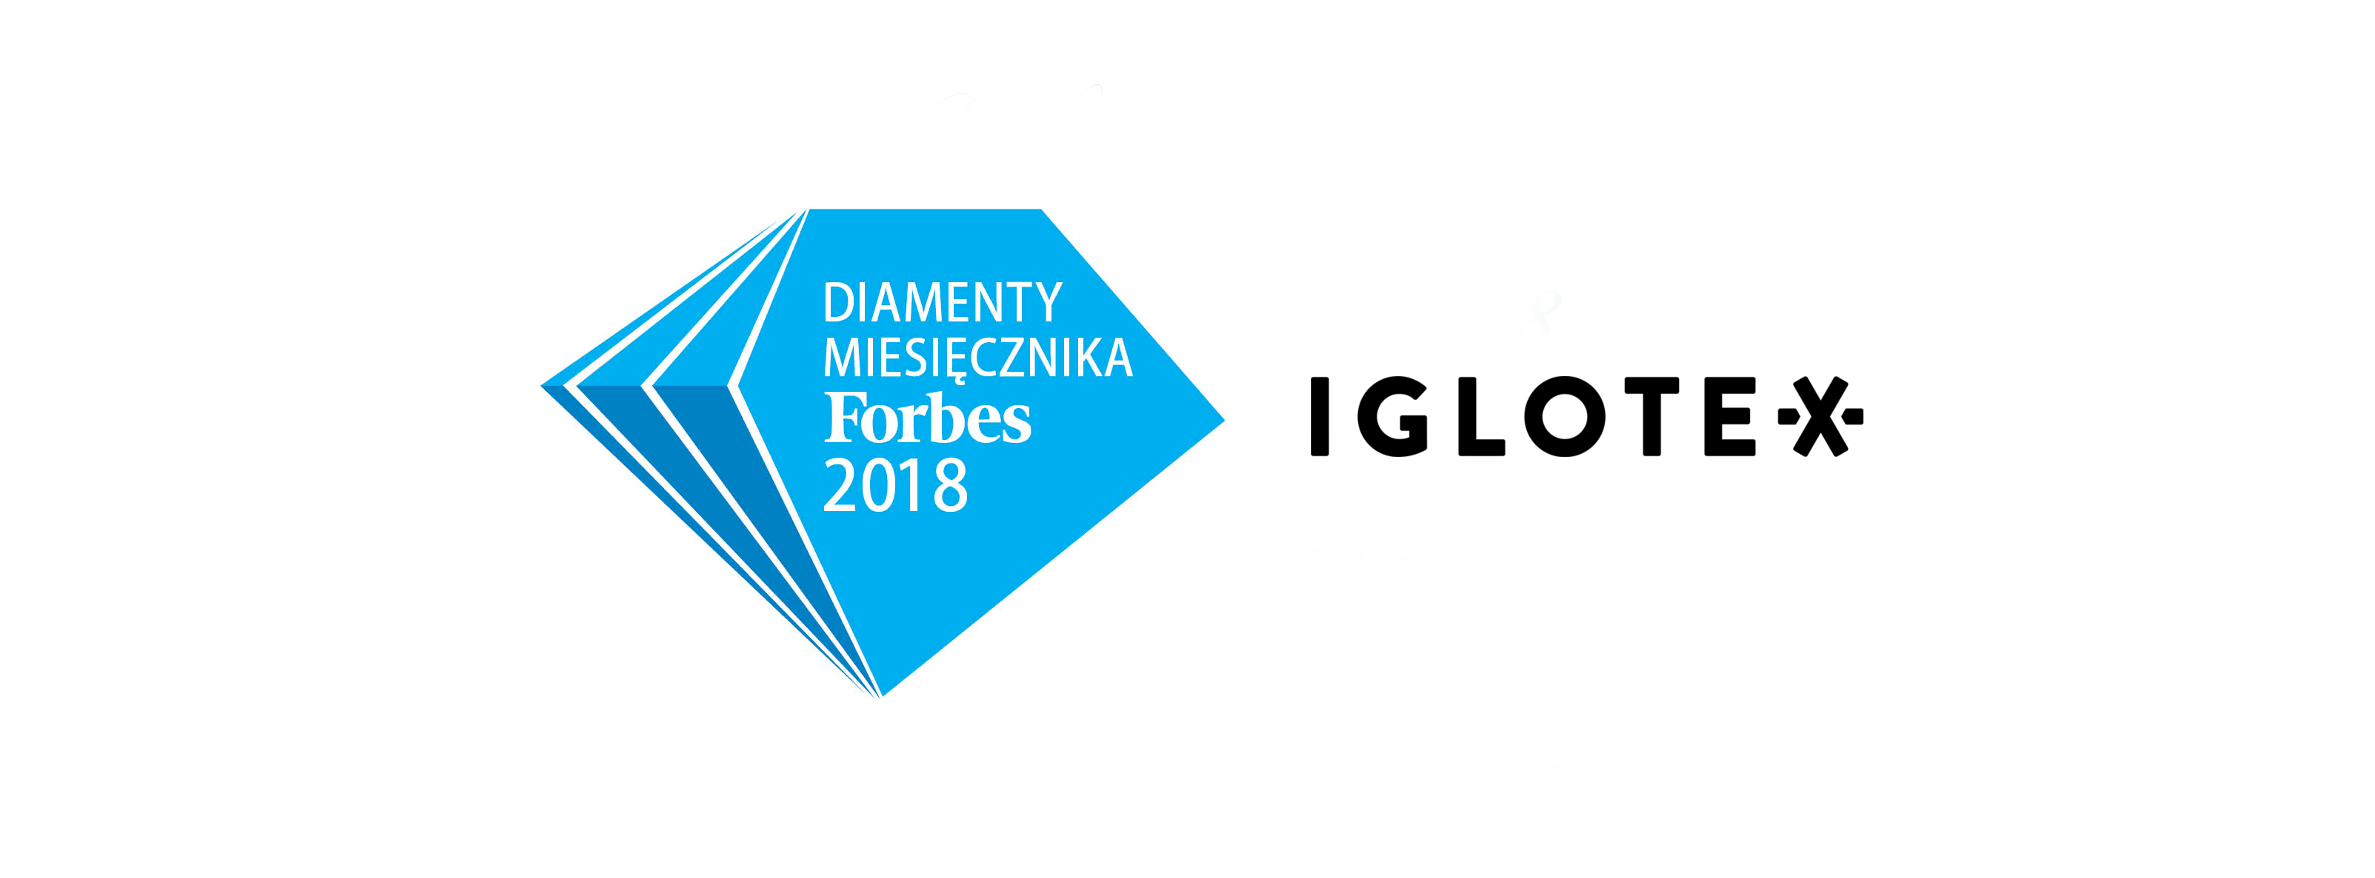 Iglotex w gronie Diamentów Forbesa 2018